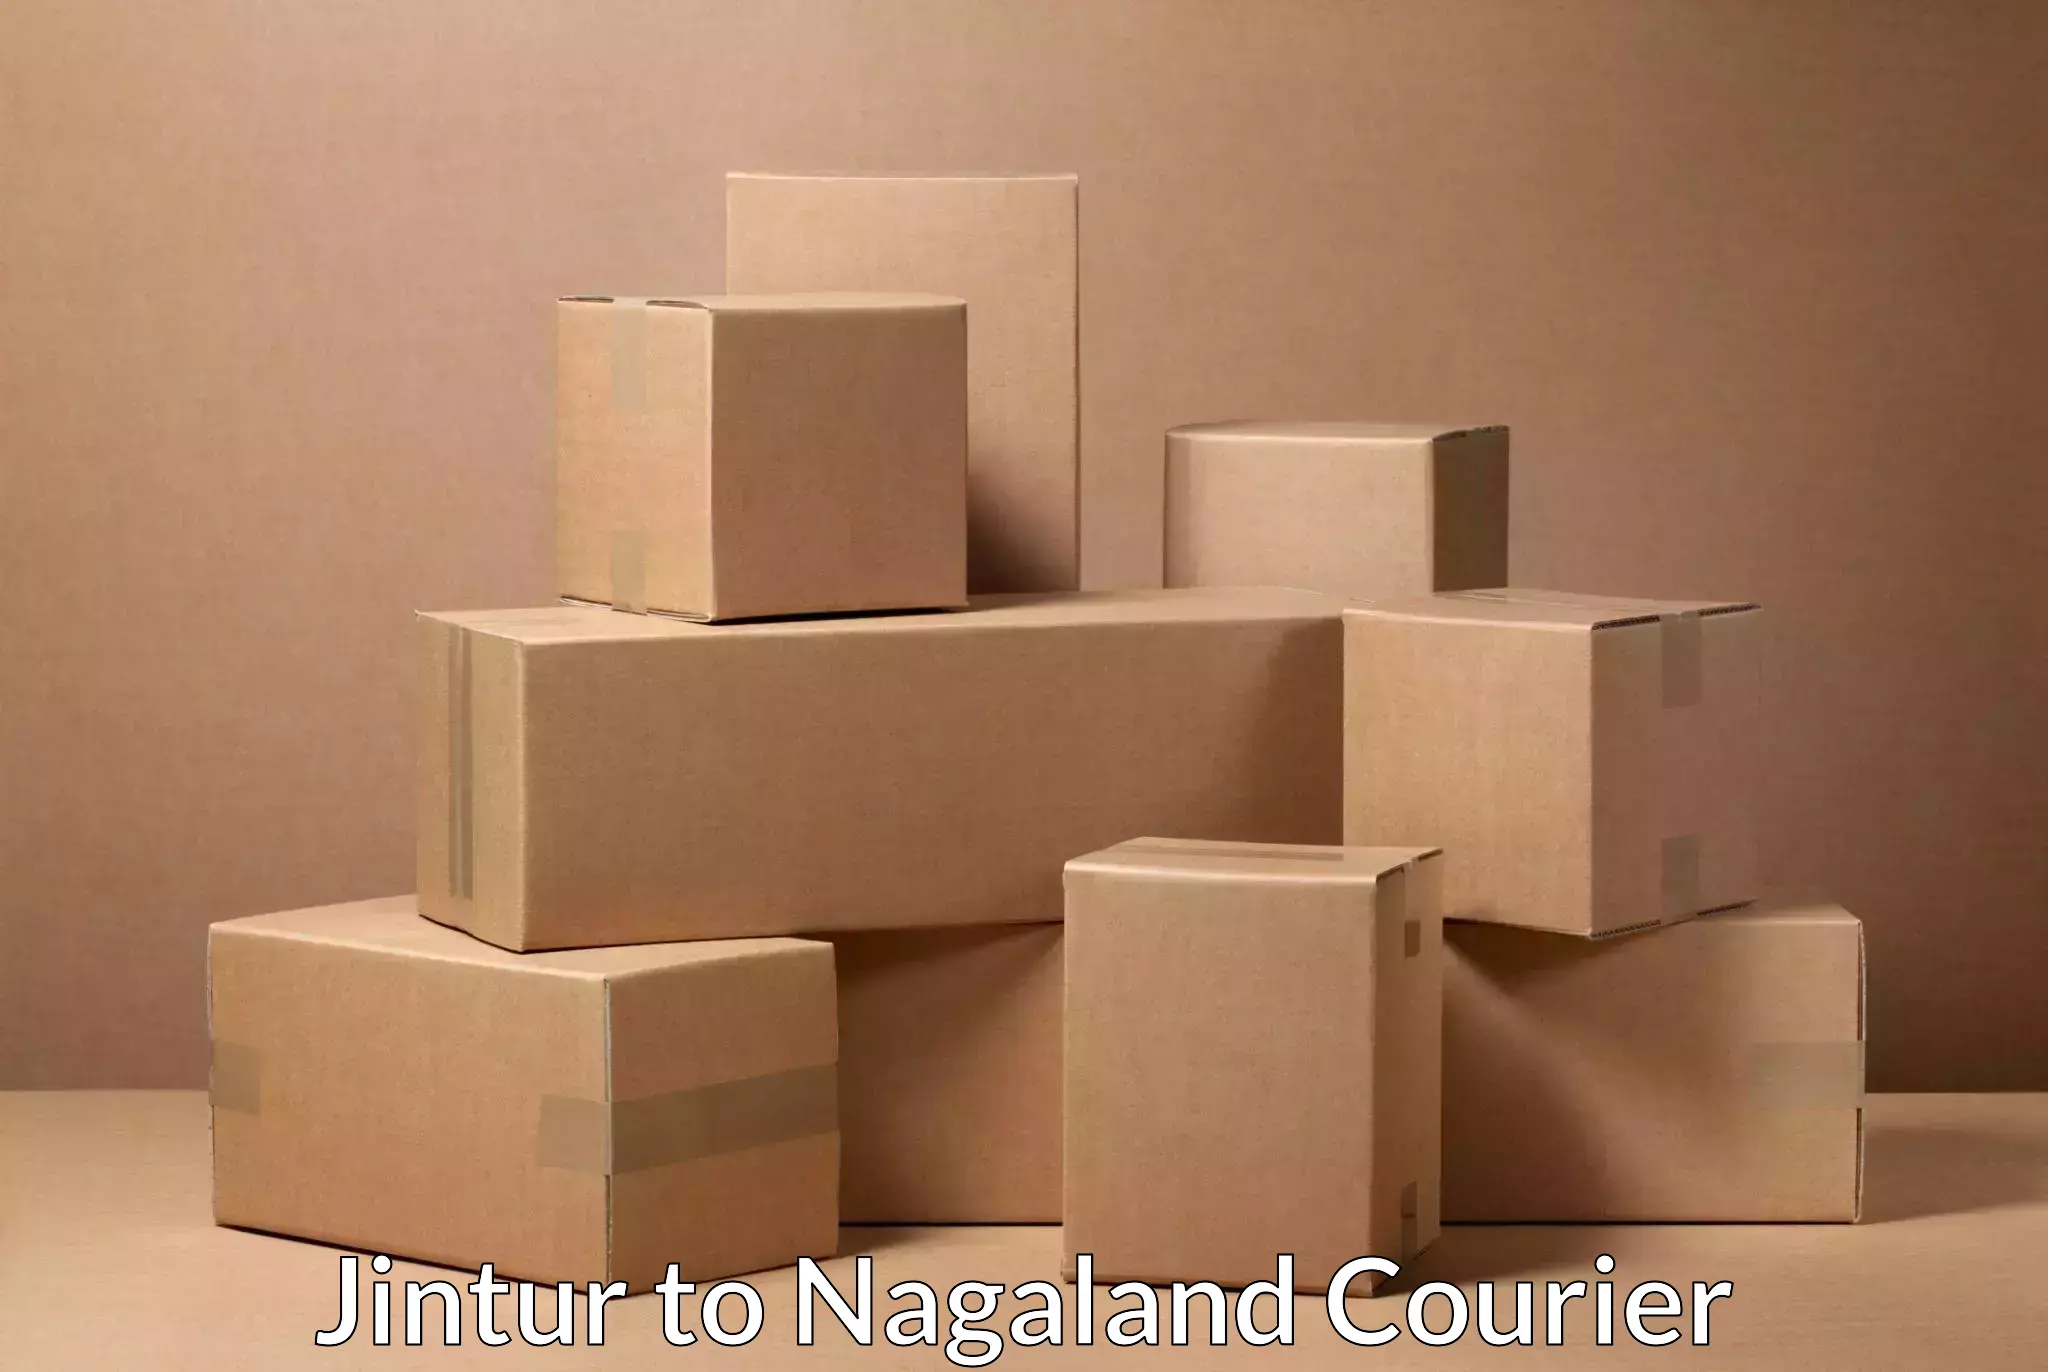 High value parcel delivery Jintur to Dimapur